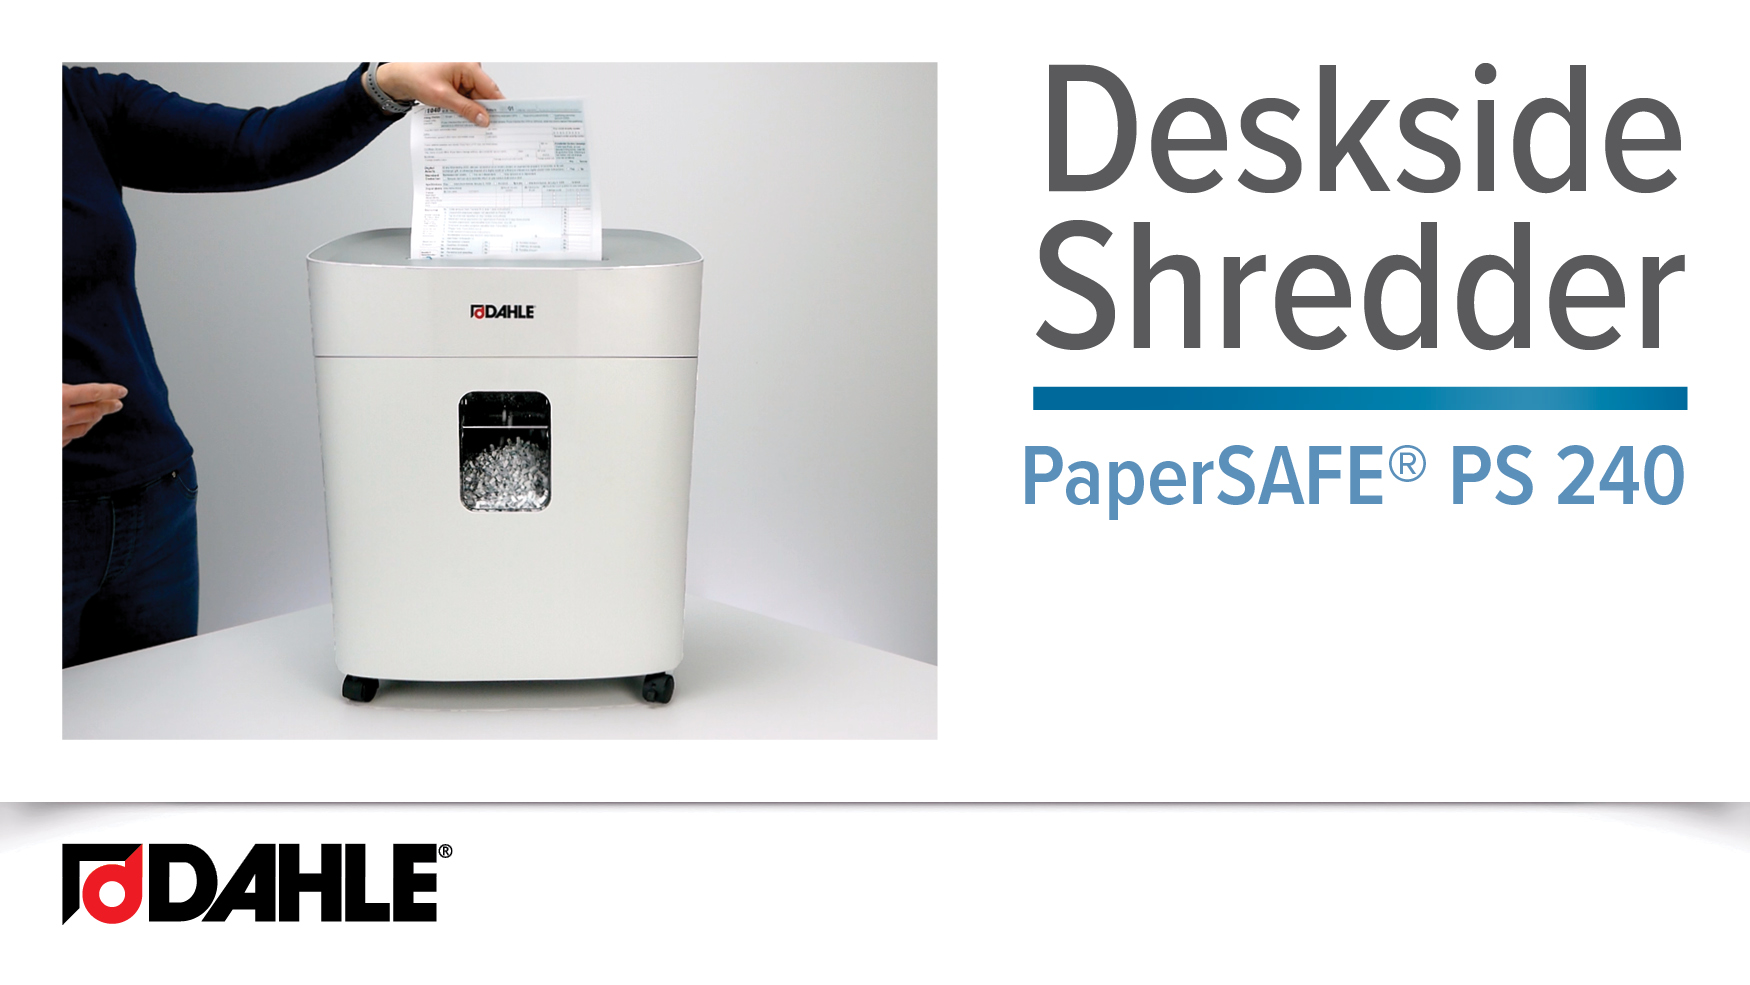 PaperSAFE® PS 240 Desk Side Shredder Video